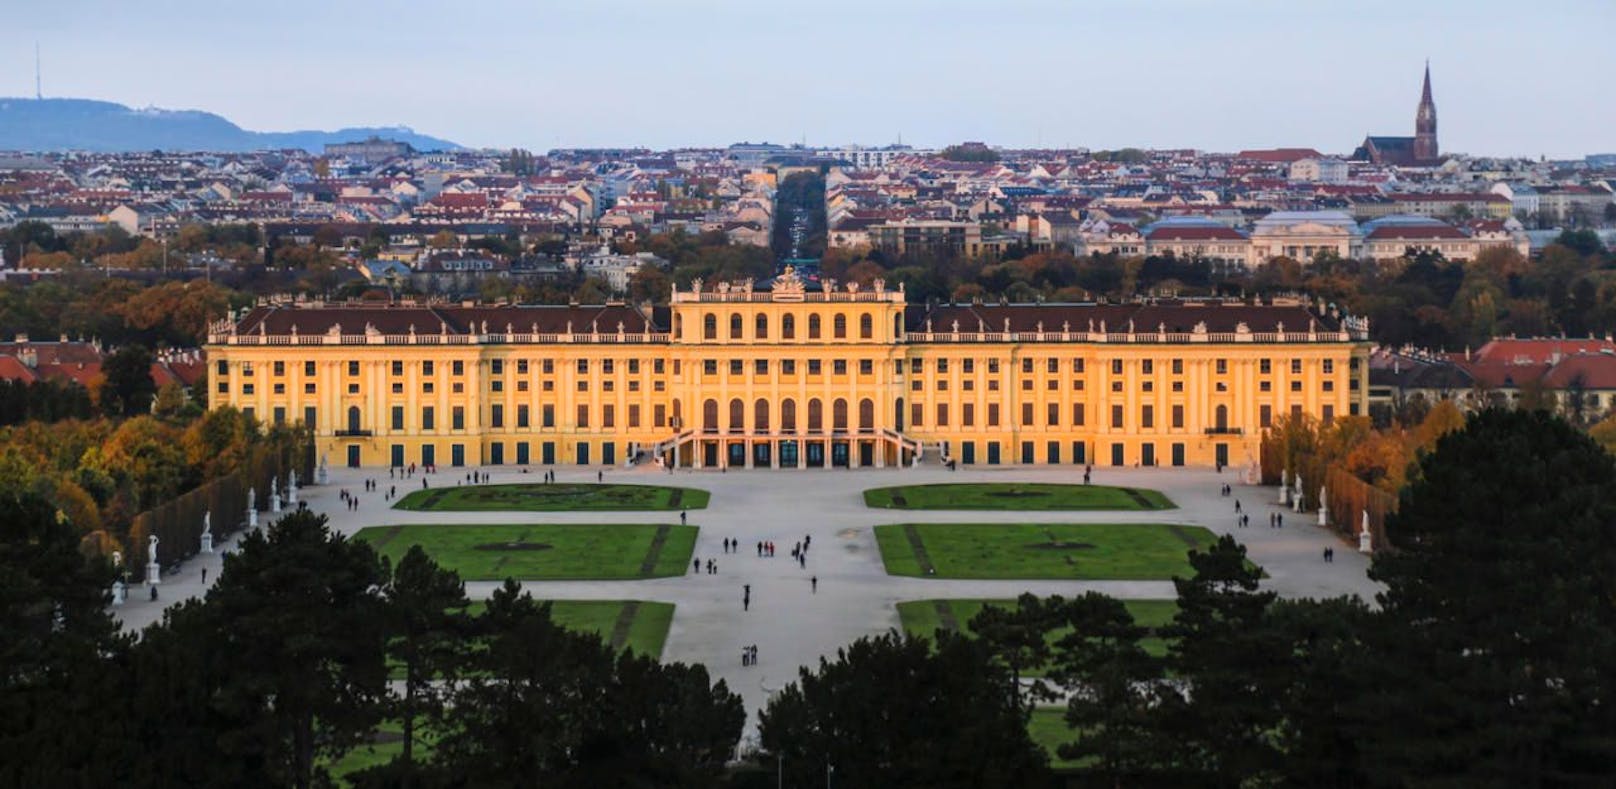 Die diesjährige Tagung findet im Schloss Schönbrunn statt und steht ganz im Zeichen der Pandemieprävention.